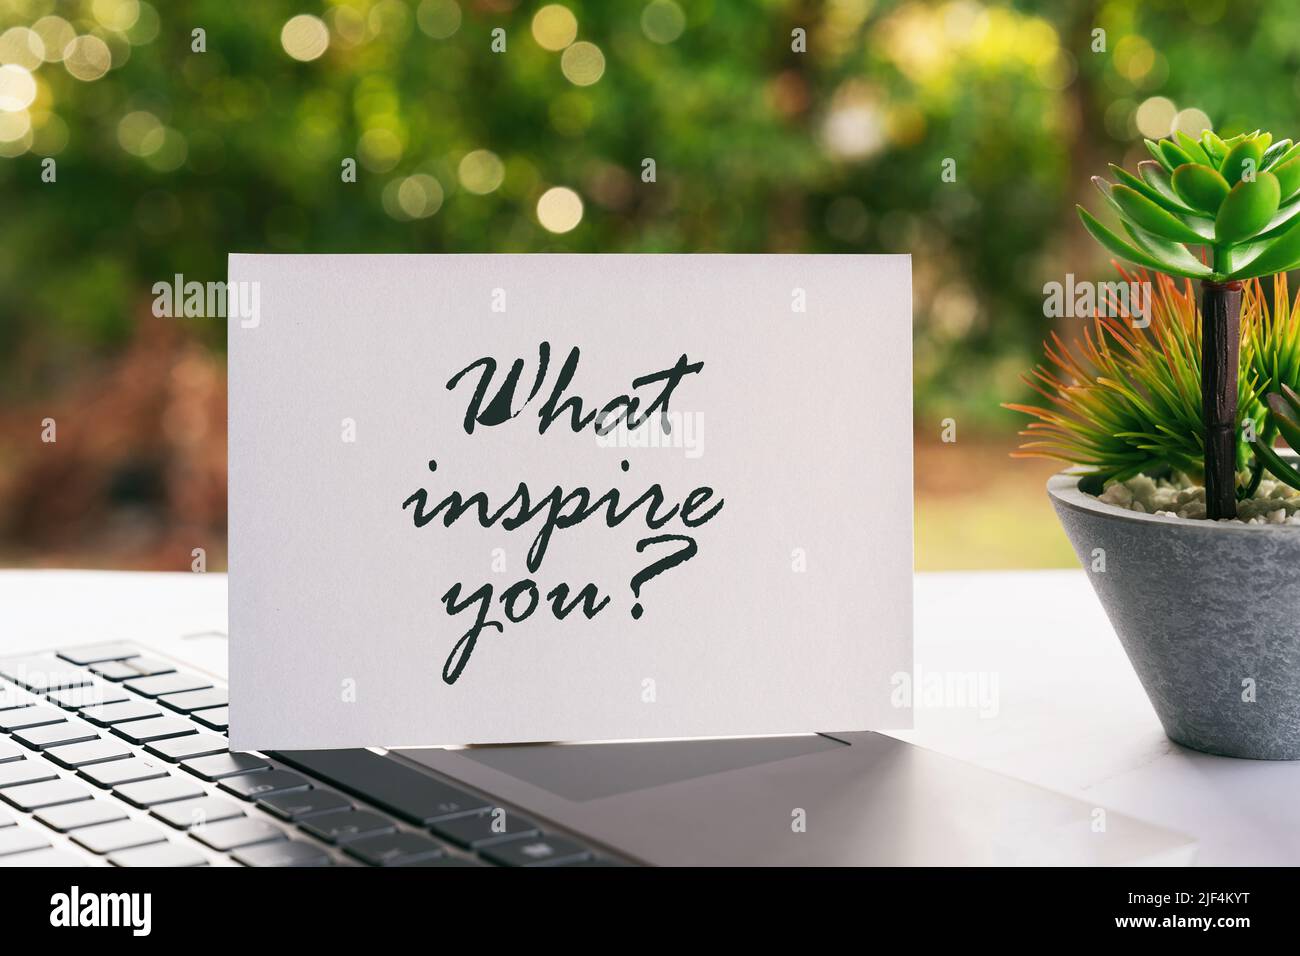 Motivierende und inspirierende Zitate zum Leben: Was inspiriert Sie? Stockfoto